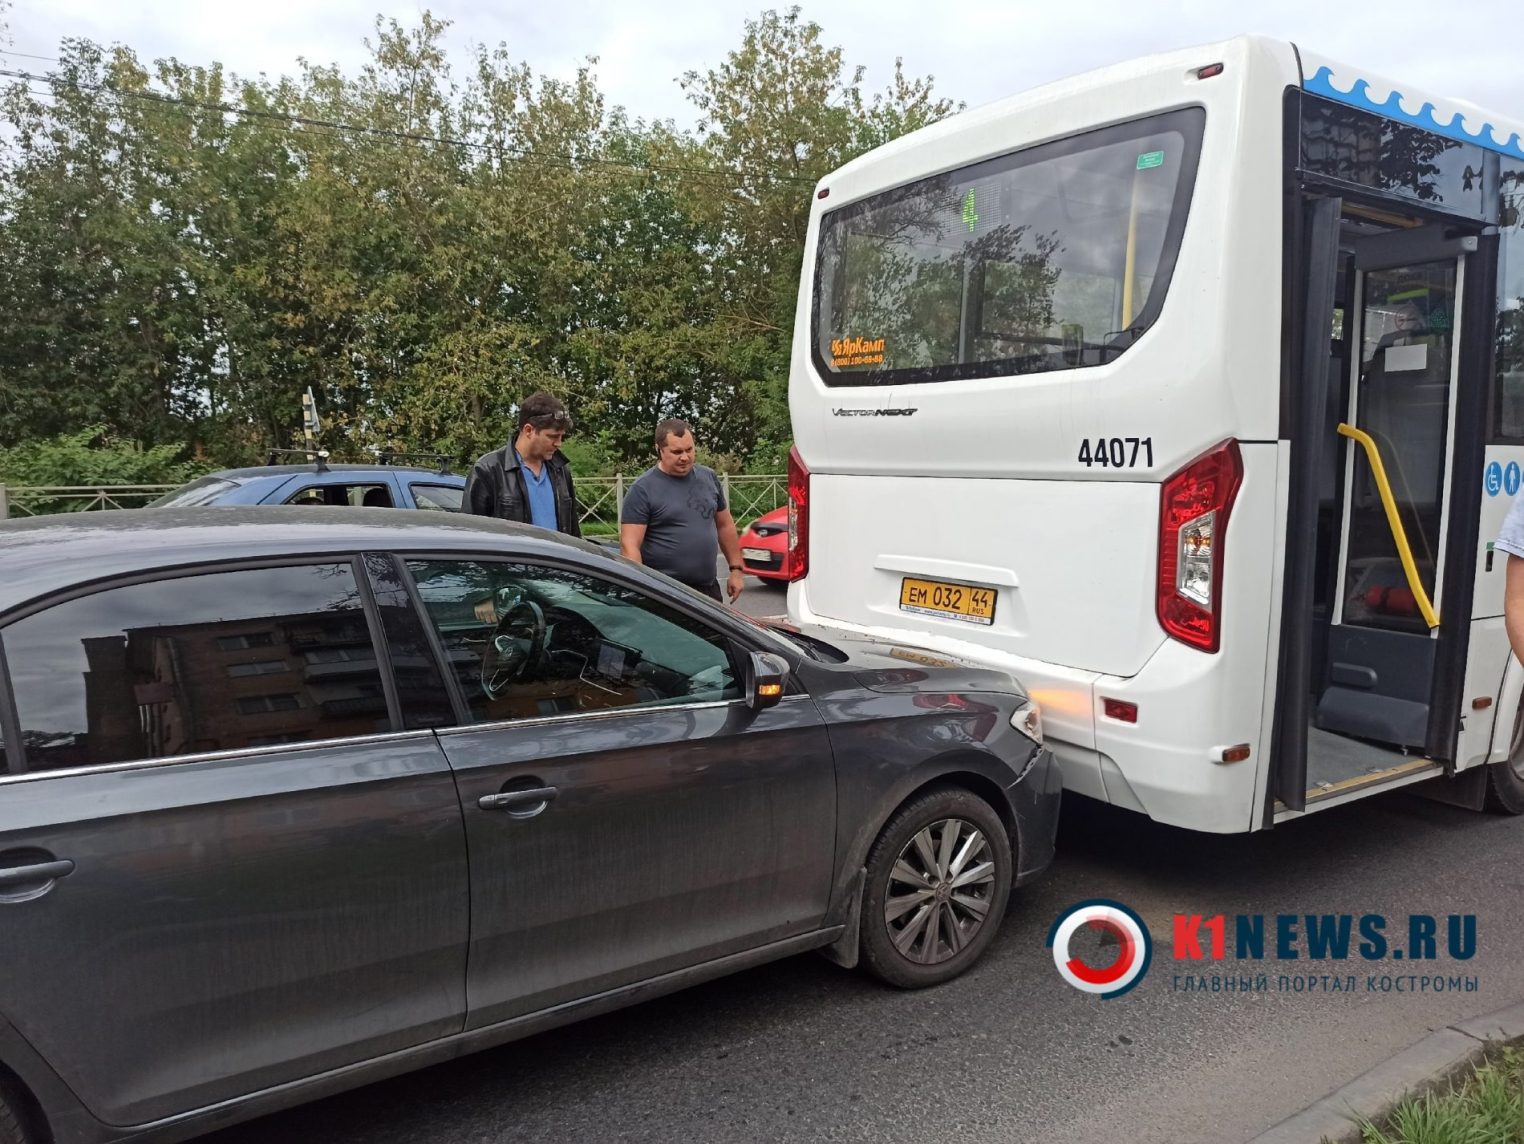 Новый автобус попал в аварию в Костроме